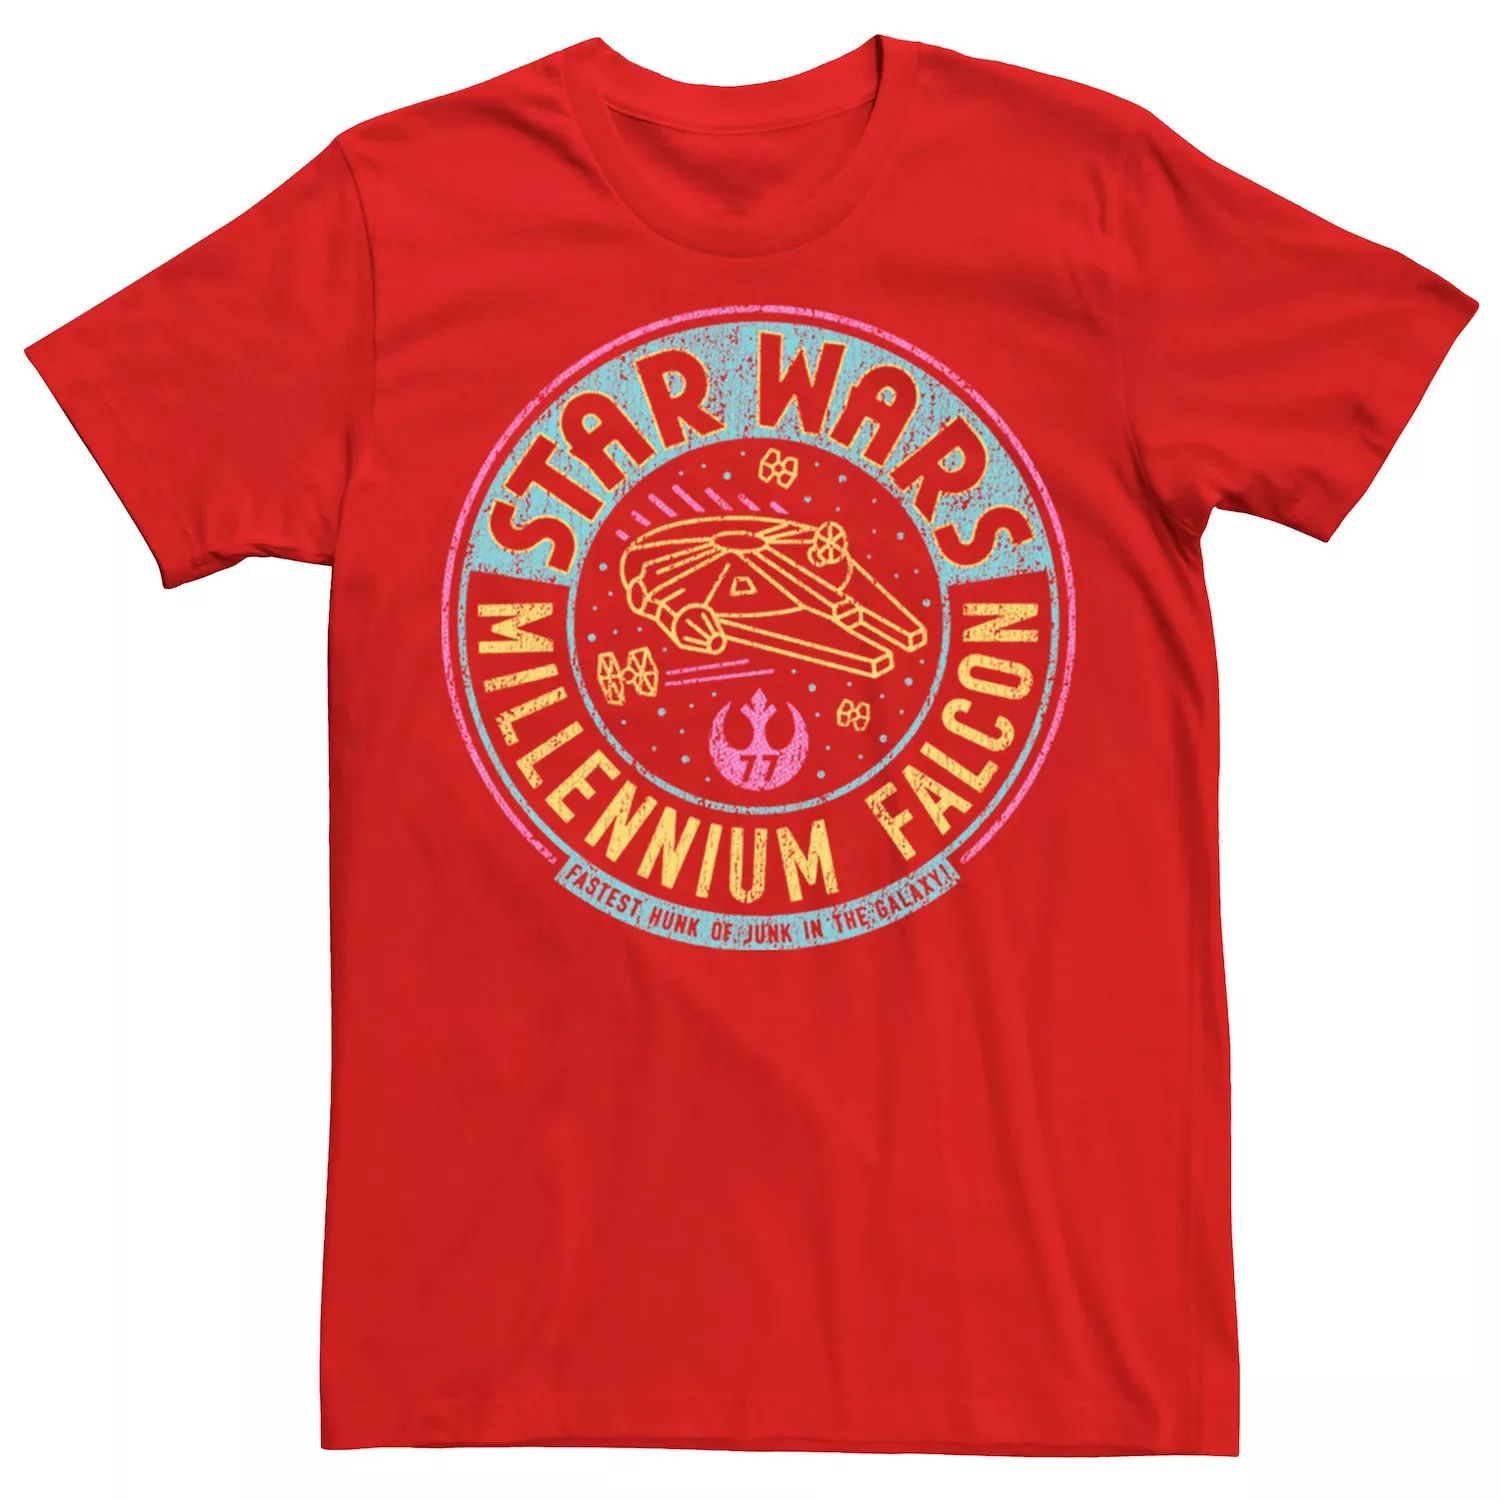 Мужская футболка с неоновым буквенным логотипом «Звездные войны: Сокол тысячелетия» Star Wars, красный мужская спортивная футболка звездные войны сокол тысячелетия star wars